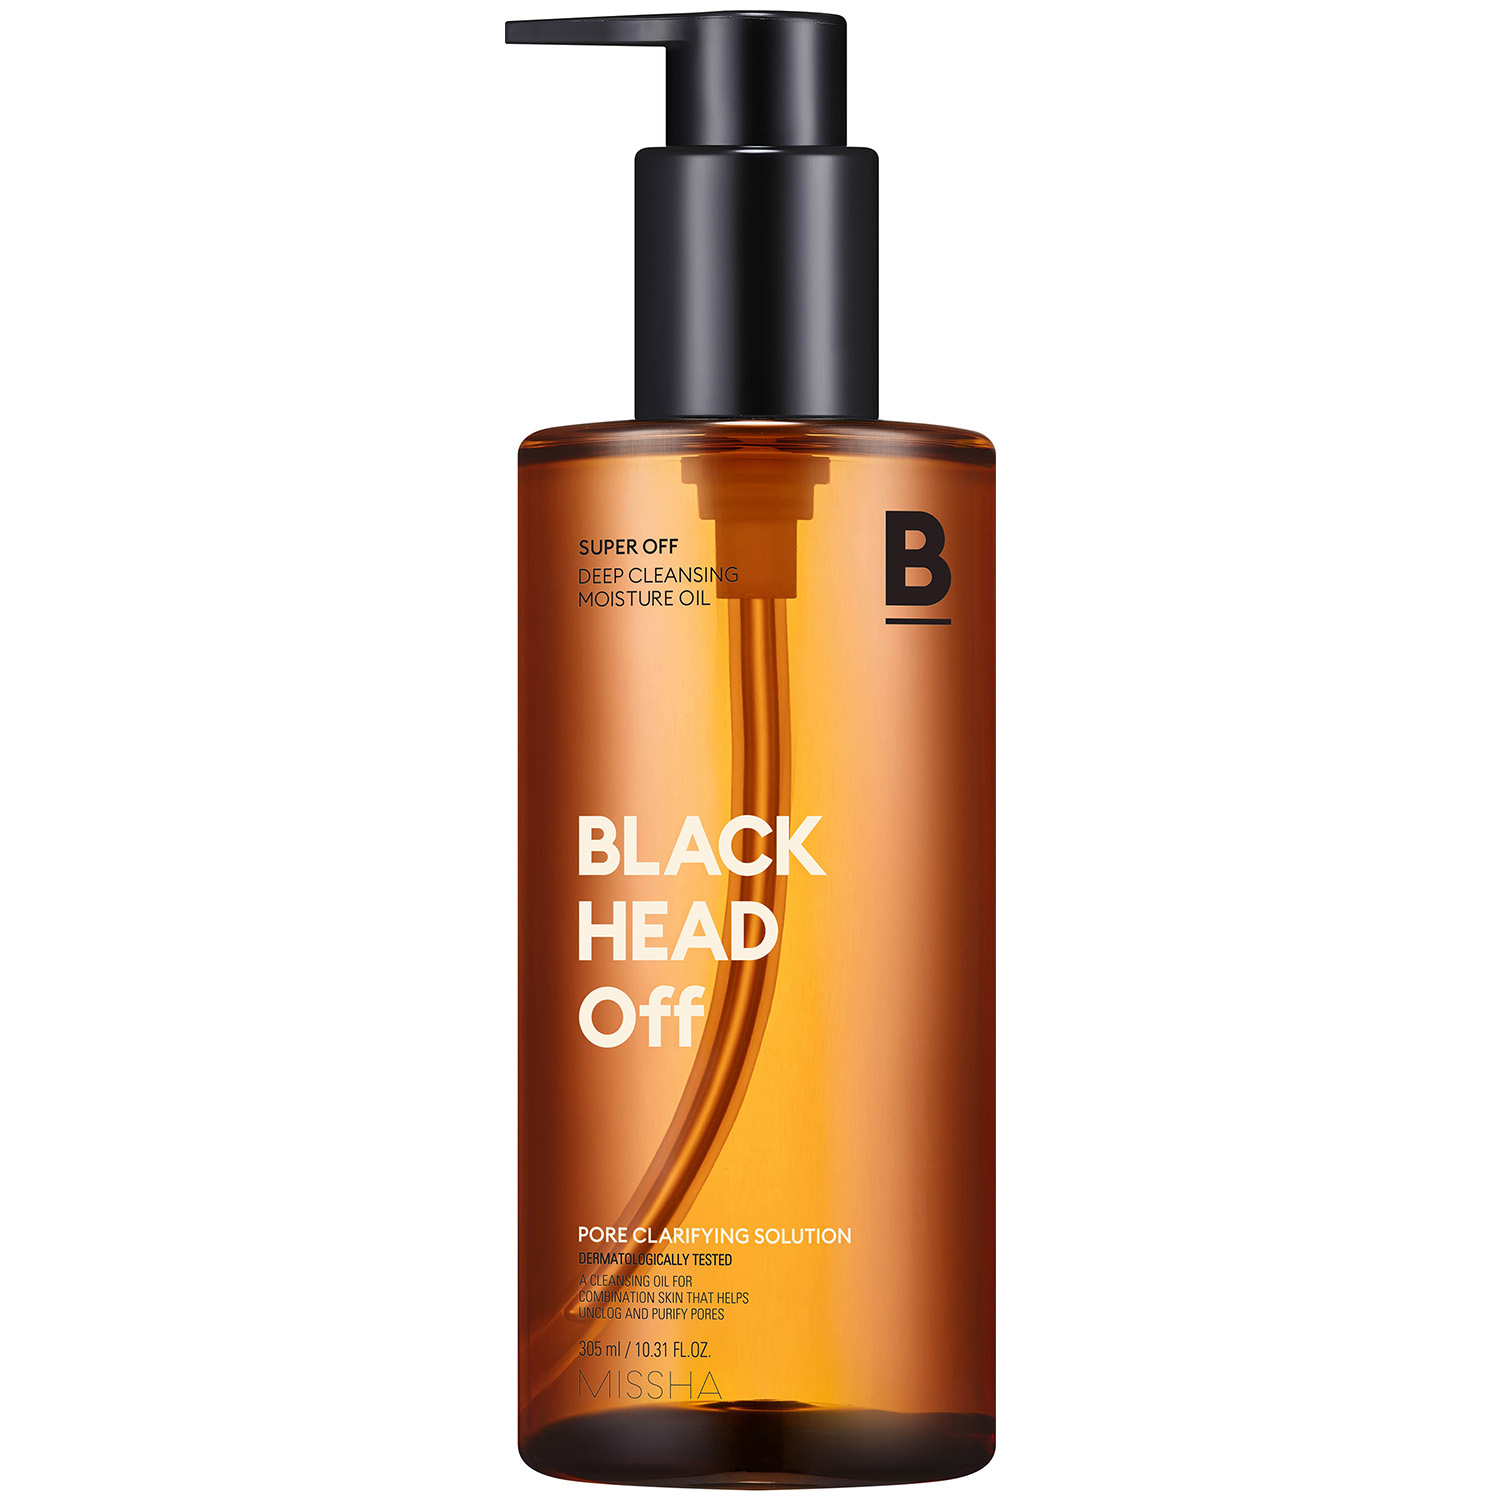 Missha Очищающее гидрофильное масло для комбинированной кожи Blackhead Off, 305 мл (Missha, Super Off) цена и фото